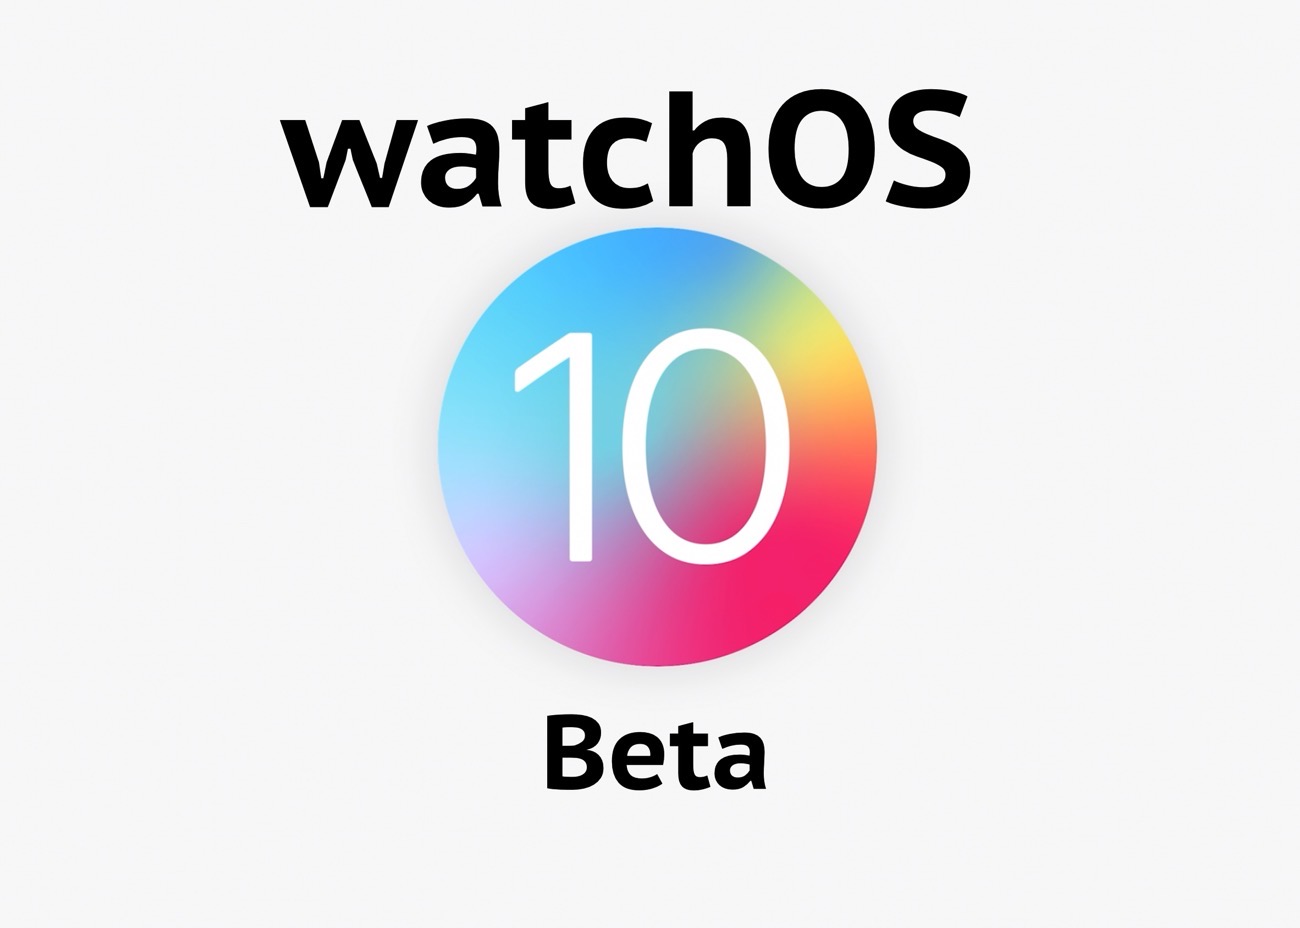 Apple、「watchOS 10.4 Developer beta 1 (21T5185g)」を開発者にリリース